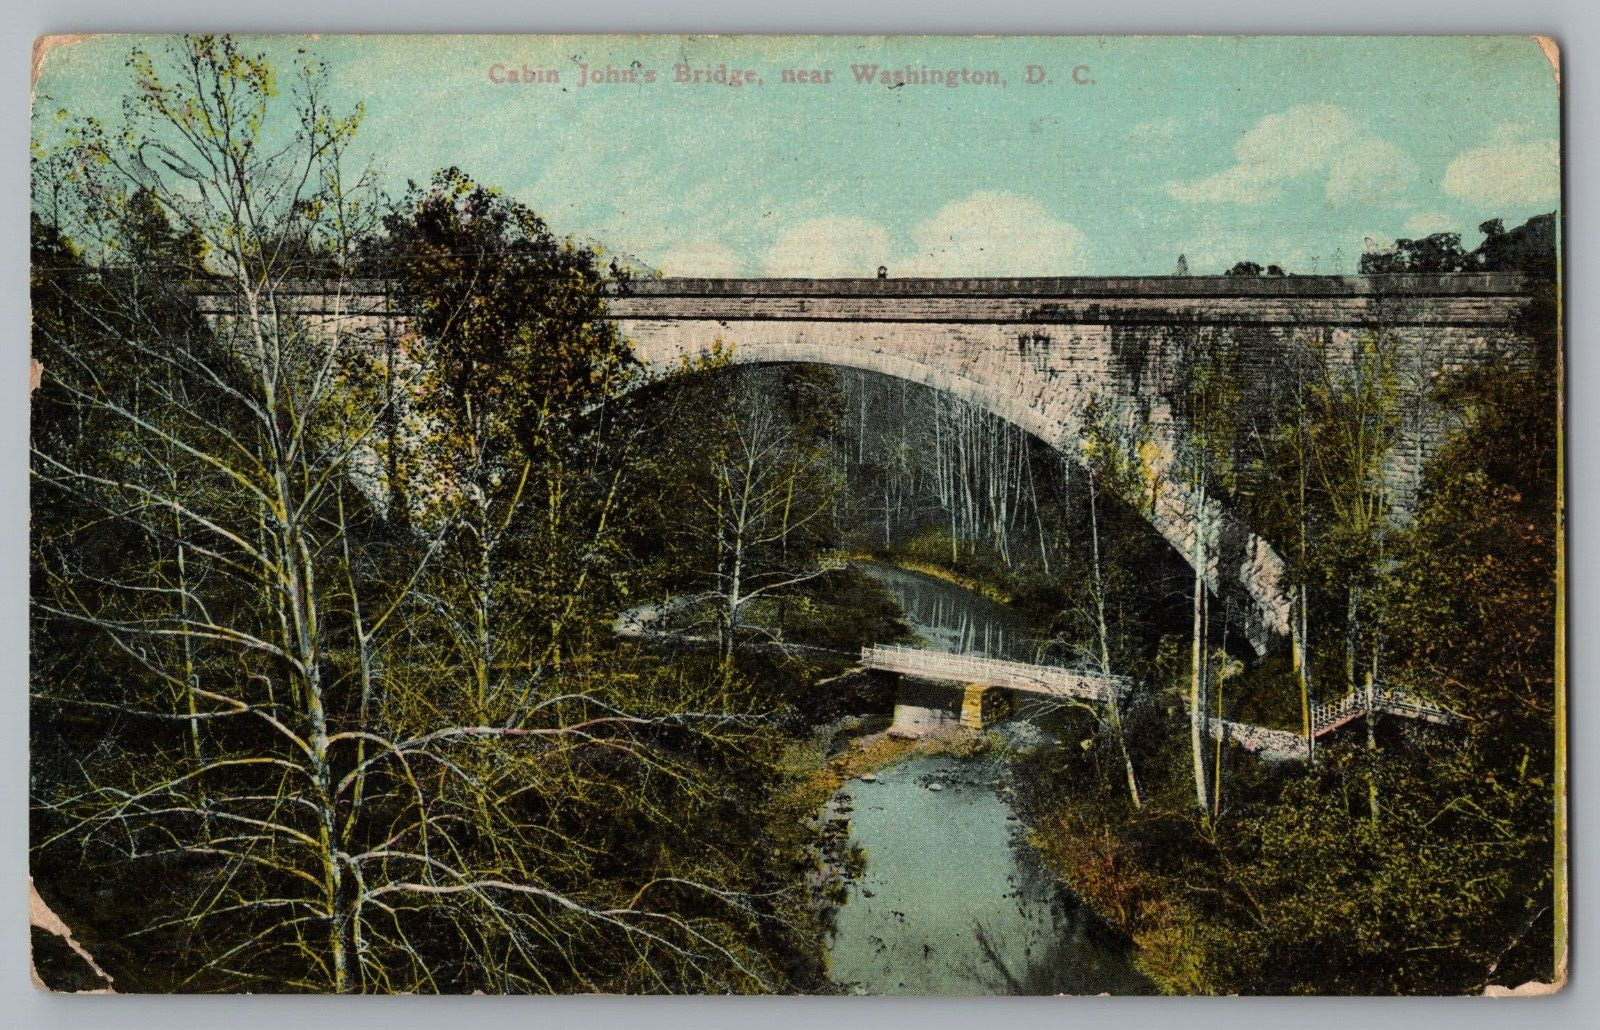 Postcard Cabin John's Bridge, Washington, D.C.